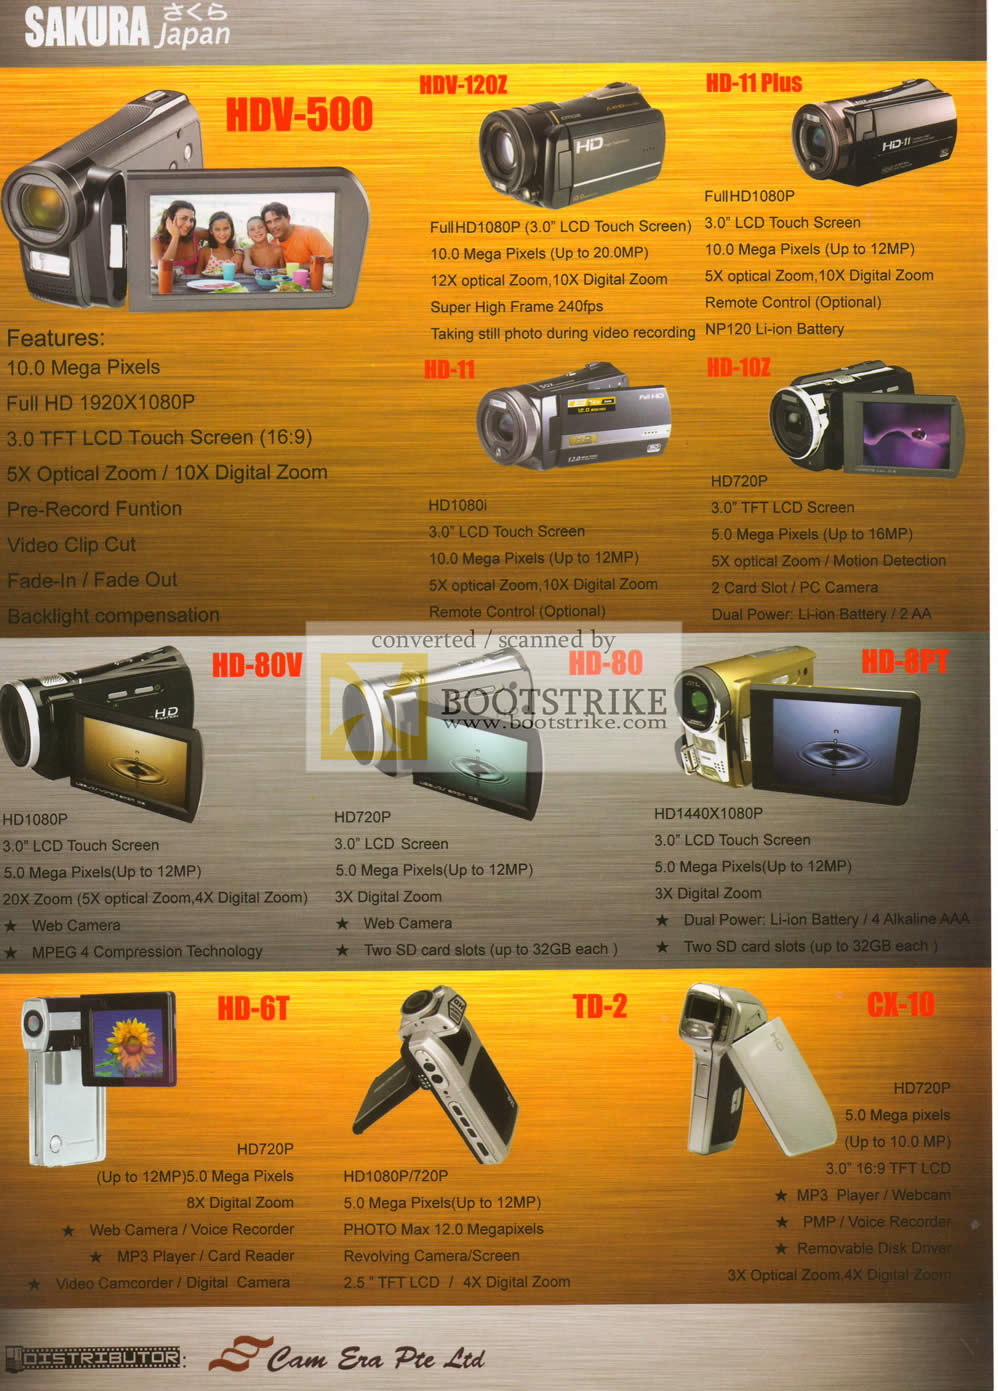 IT Show 2010 price list image brochure of Sakura Japan Video Camcorders HDV 500 12Z 11 Plus 10z 80v 80 8pt 6t Td 2 CX 10